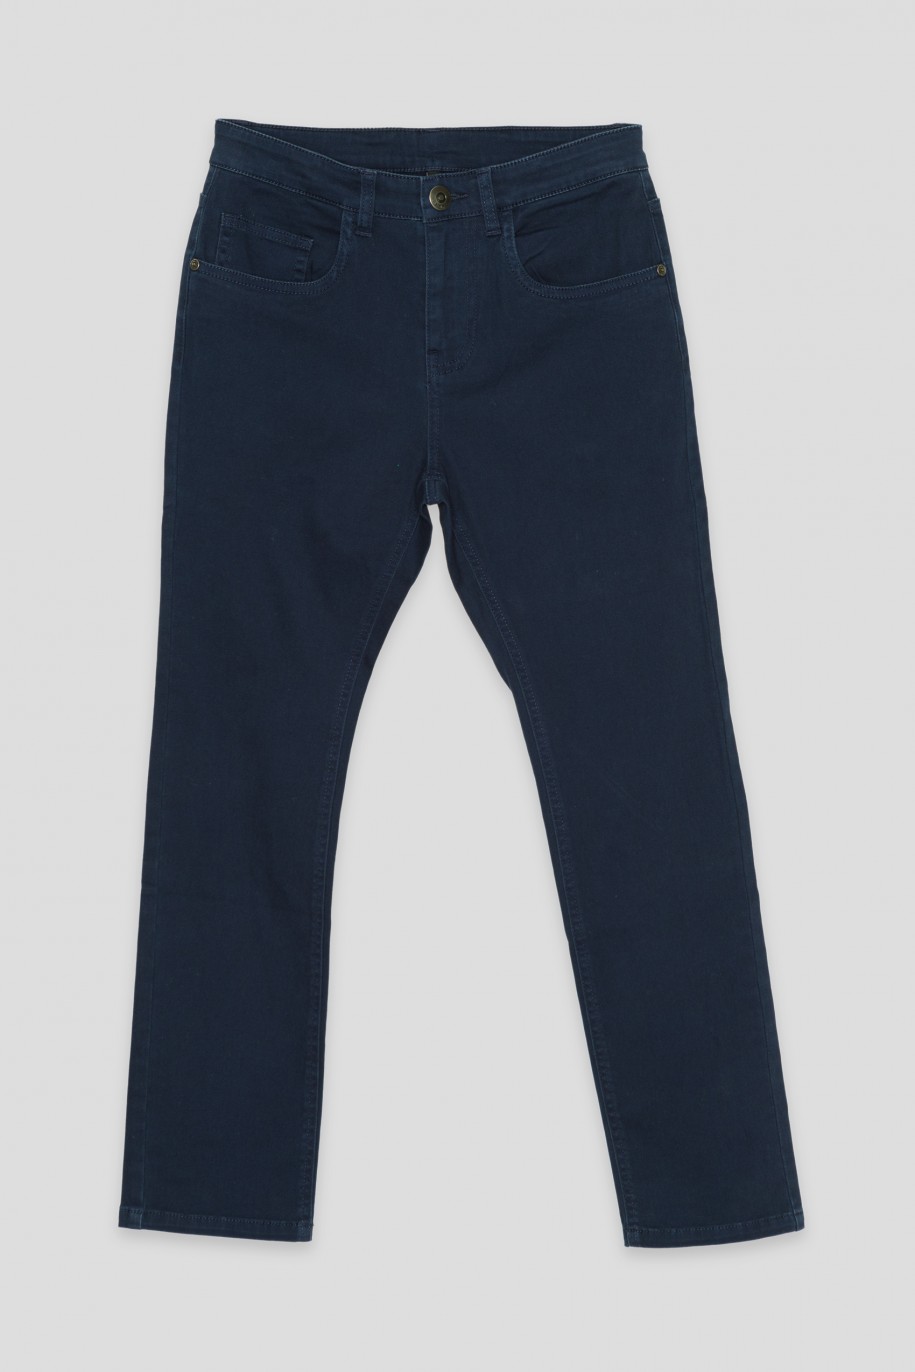 Granatowe spodnie jeansowe o klasycznym kroju - 46447